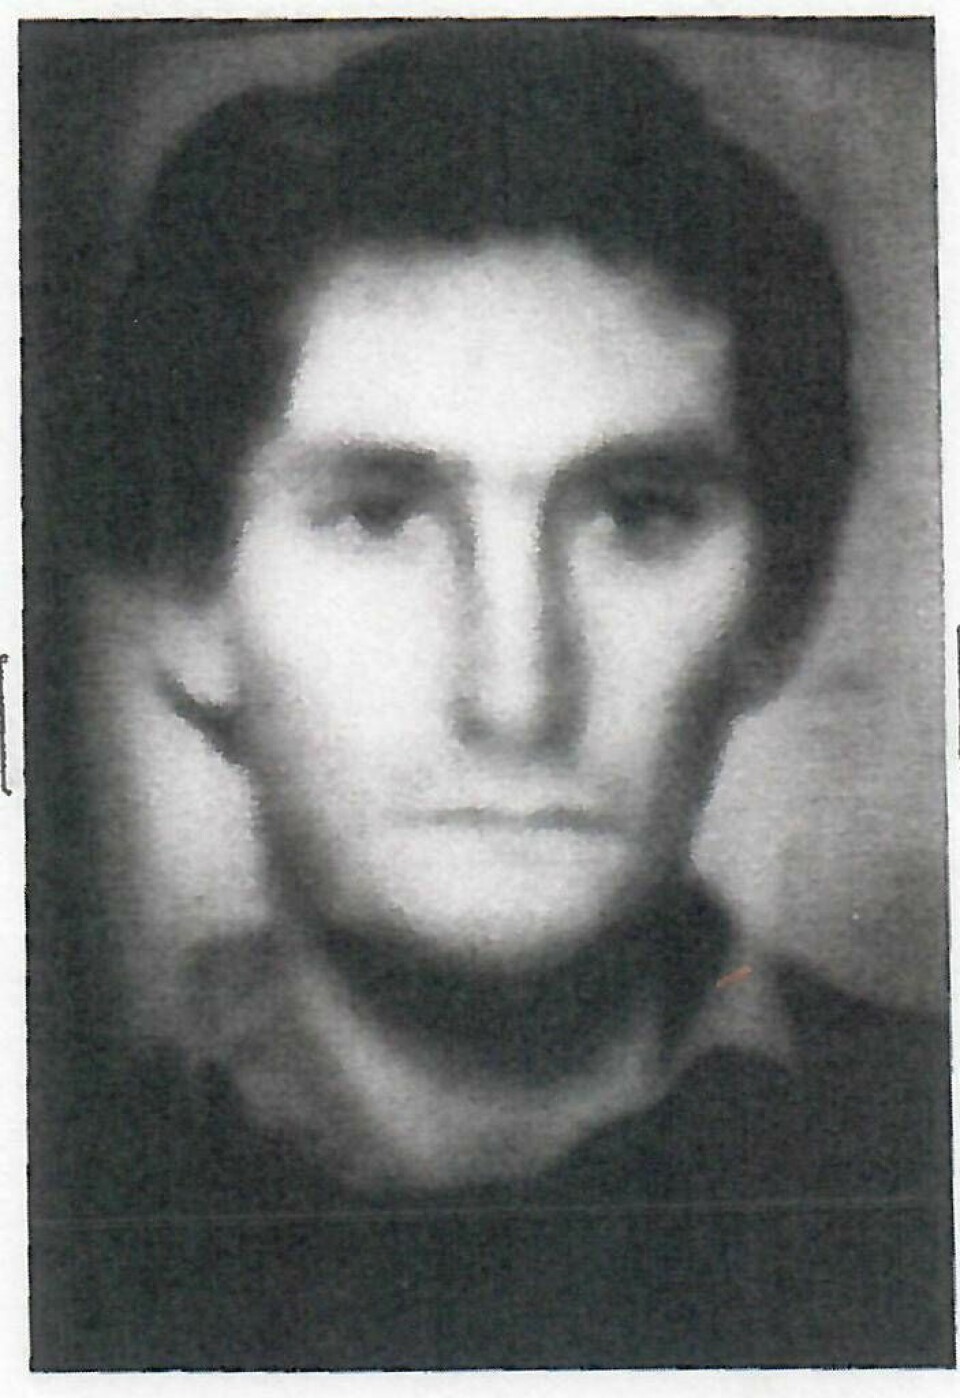 Denna fantombild offentliggjordes den 6 mars 1986 och antogs föreställa mördaren. Bilden gjordes med hjälp av en kvinnlig tecknare som hade stött på en mystisk man ett stycke från mordplatsen strax efter att Olof Palme skjutits. Foto: Polisen